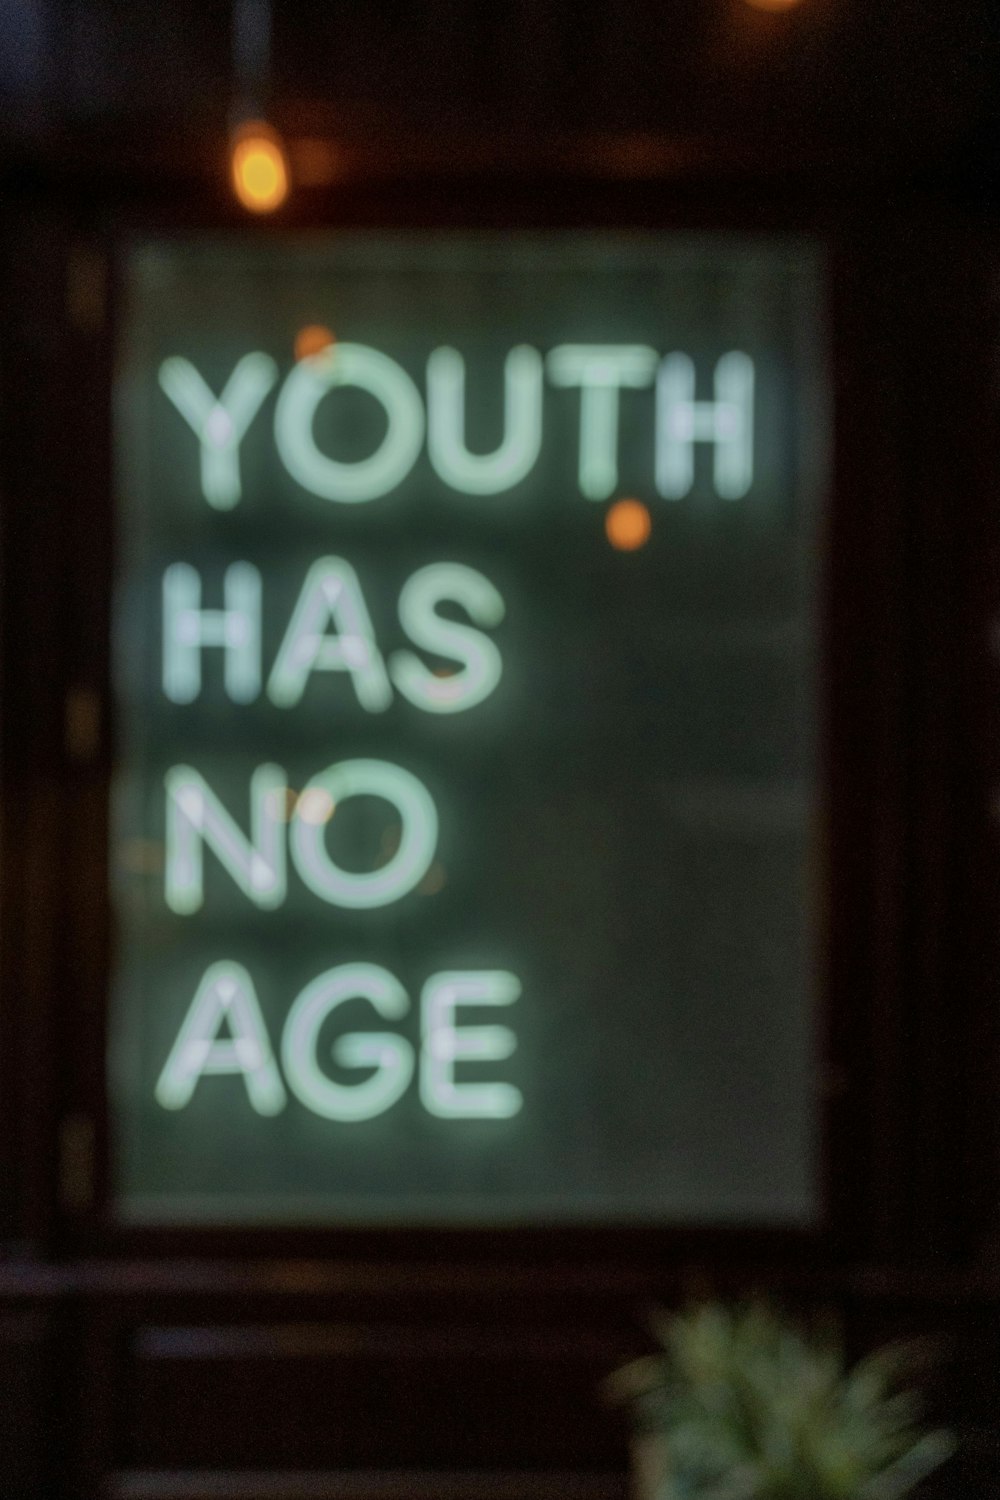 젊음에는 나이가 없다는 표시